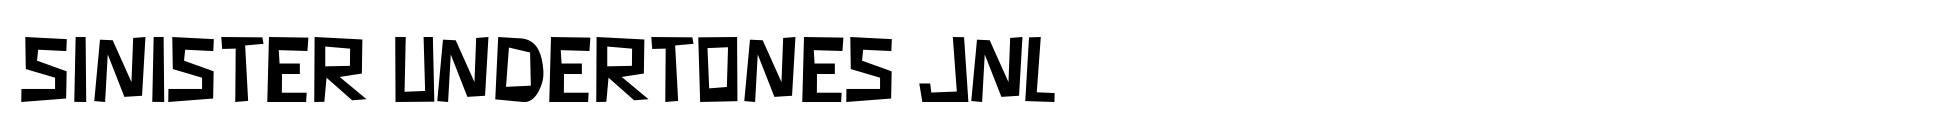 Sinister Undertones JNL